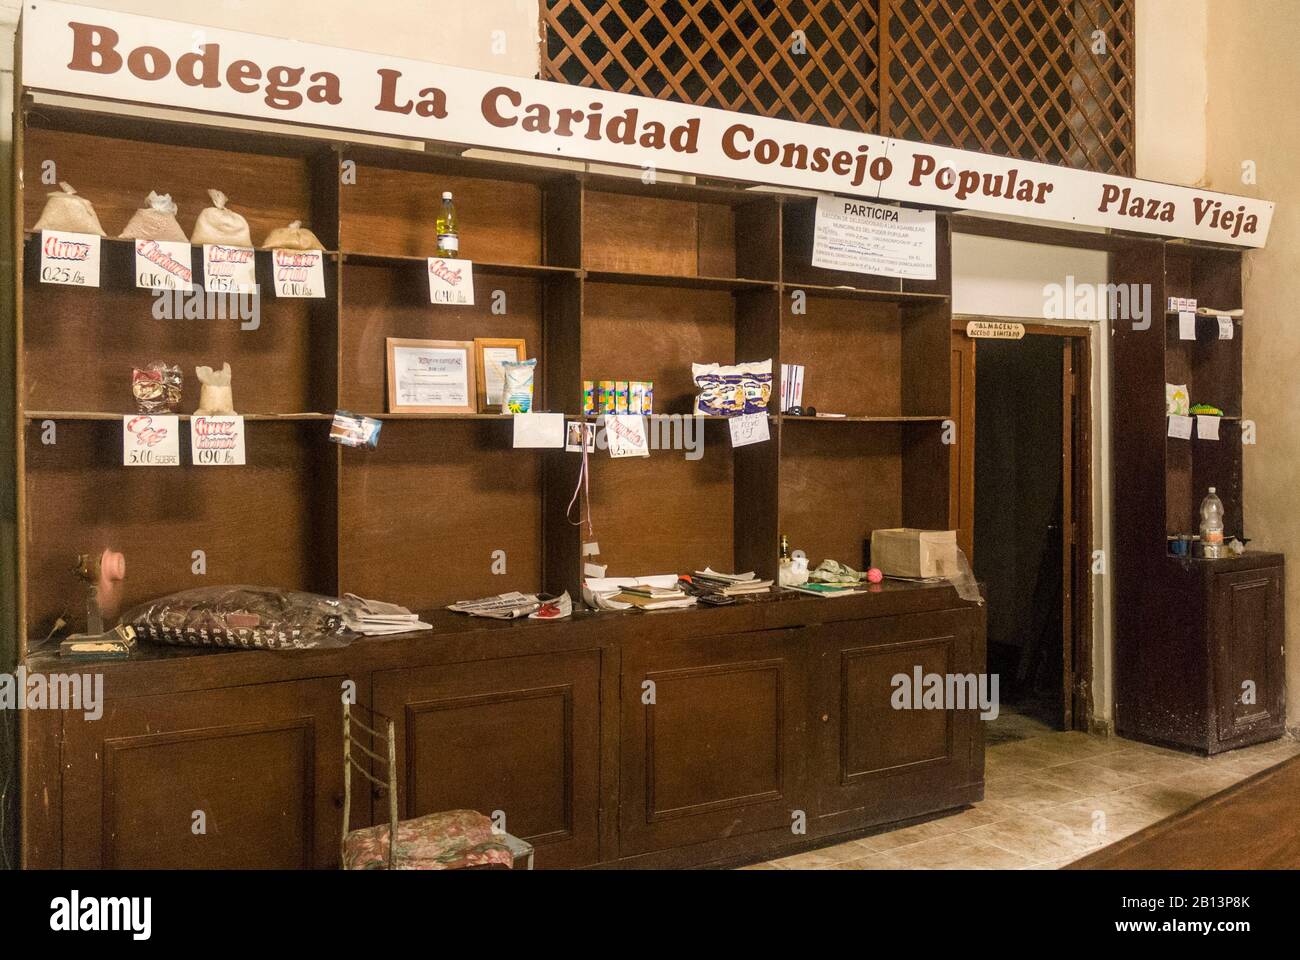 Bodega La Caridad del Consejo Popular, La Habana, Cuba Stock Photo